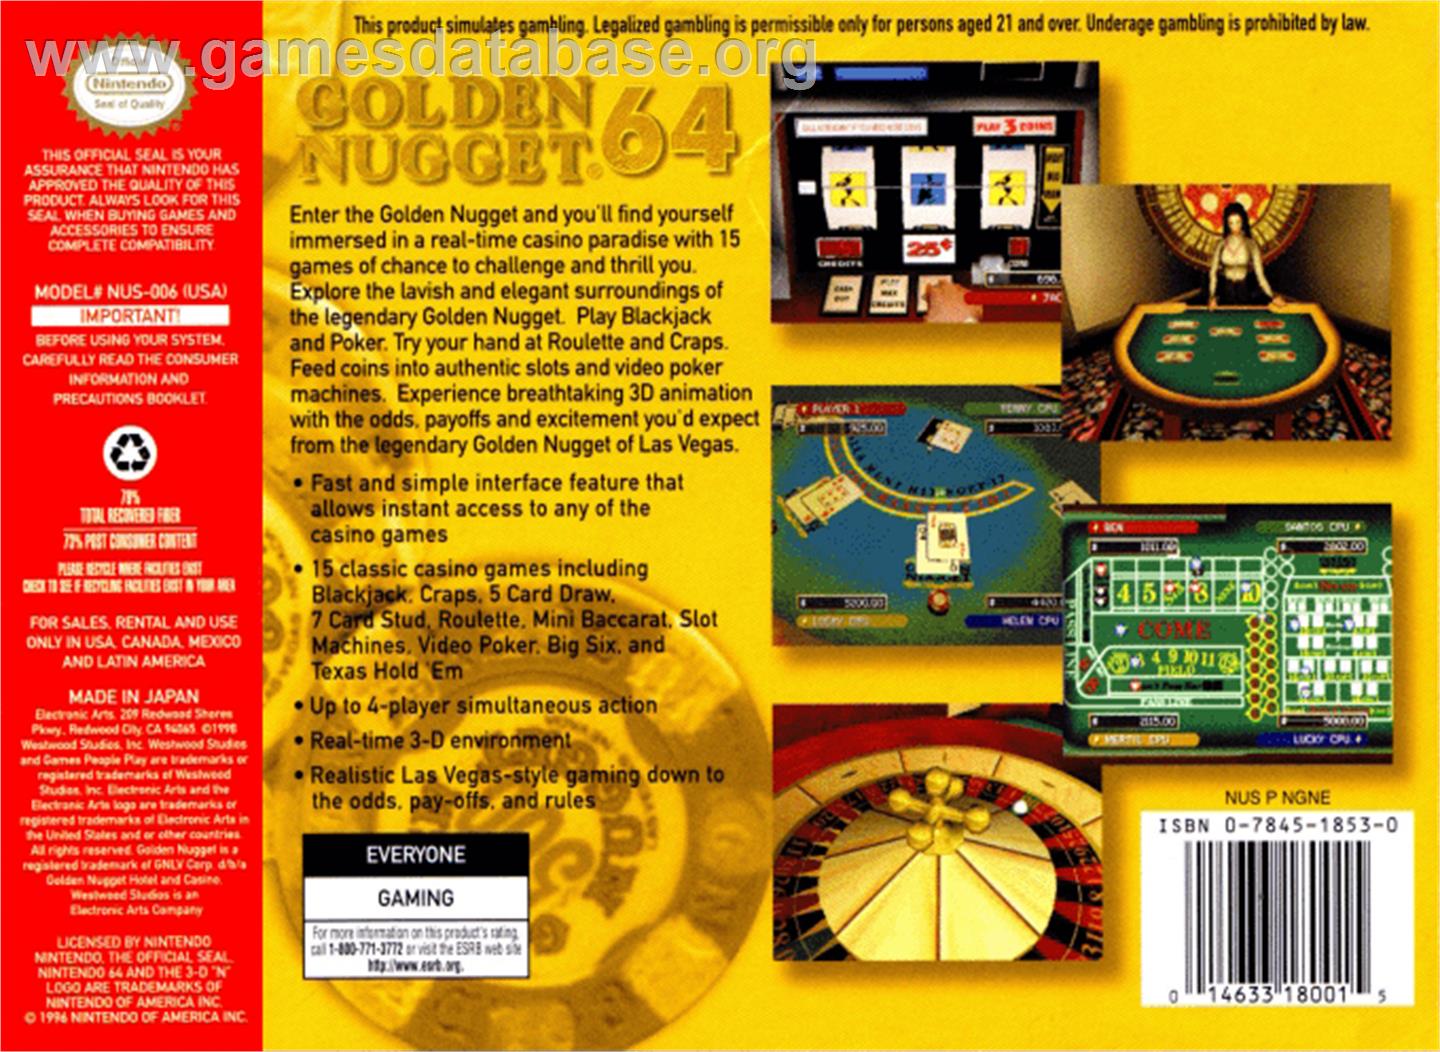 Golden Nugget 64 - Nintendo N64 - Artwork - Box Back